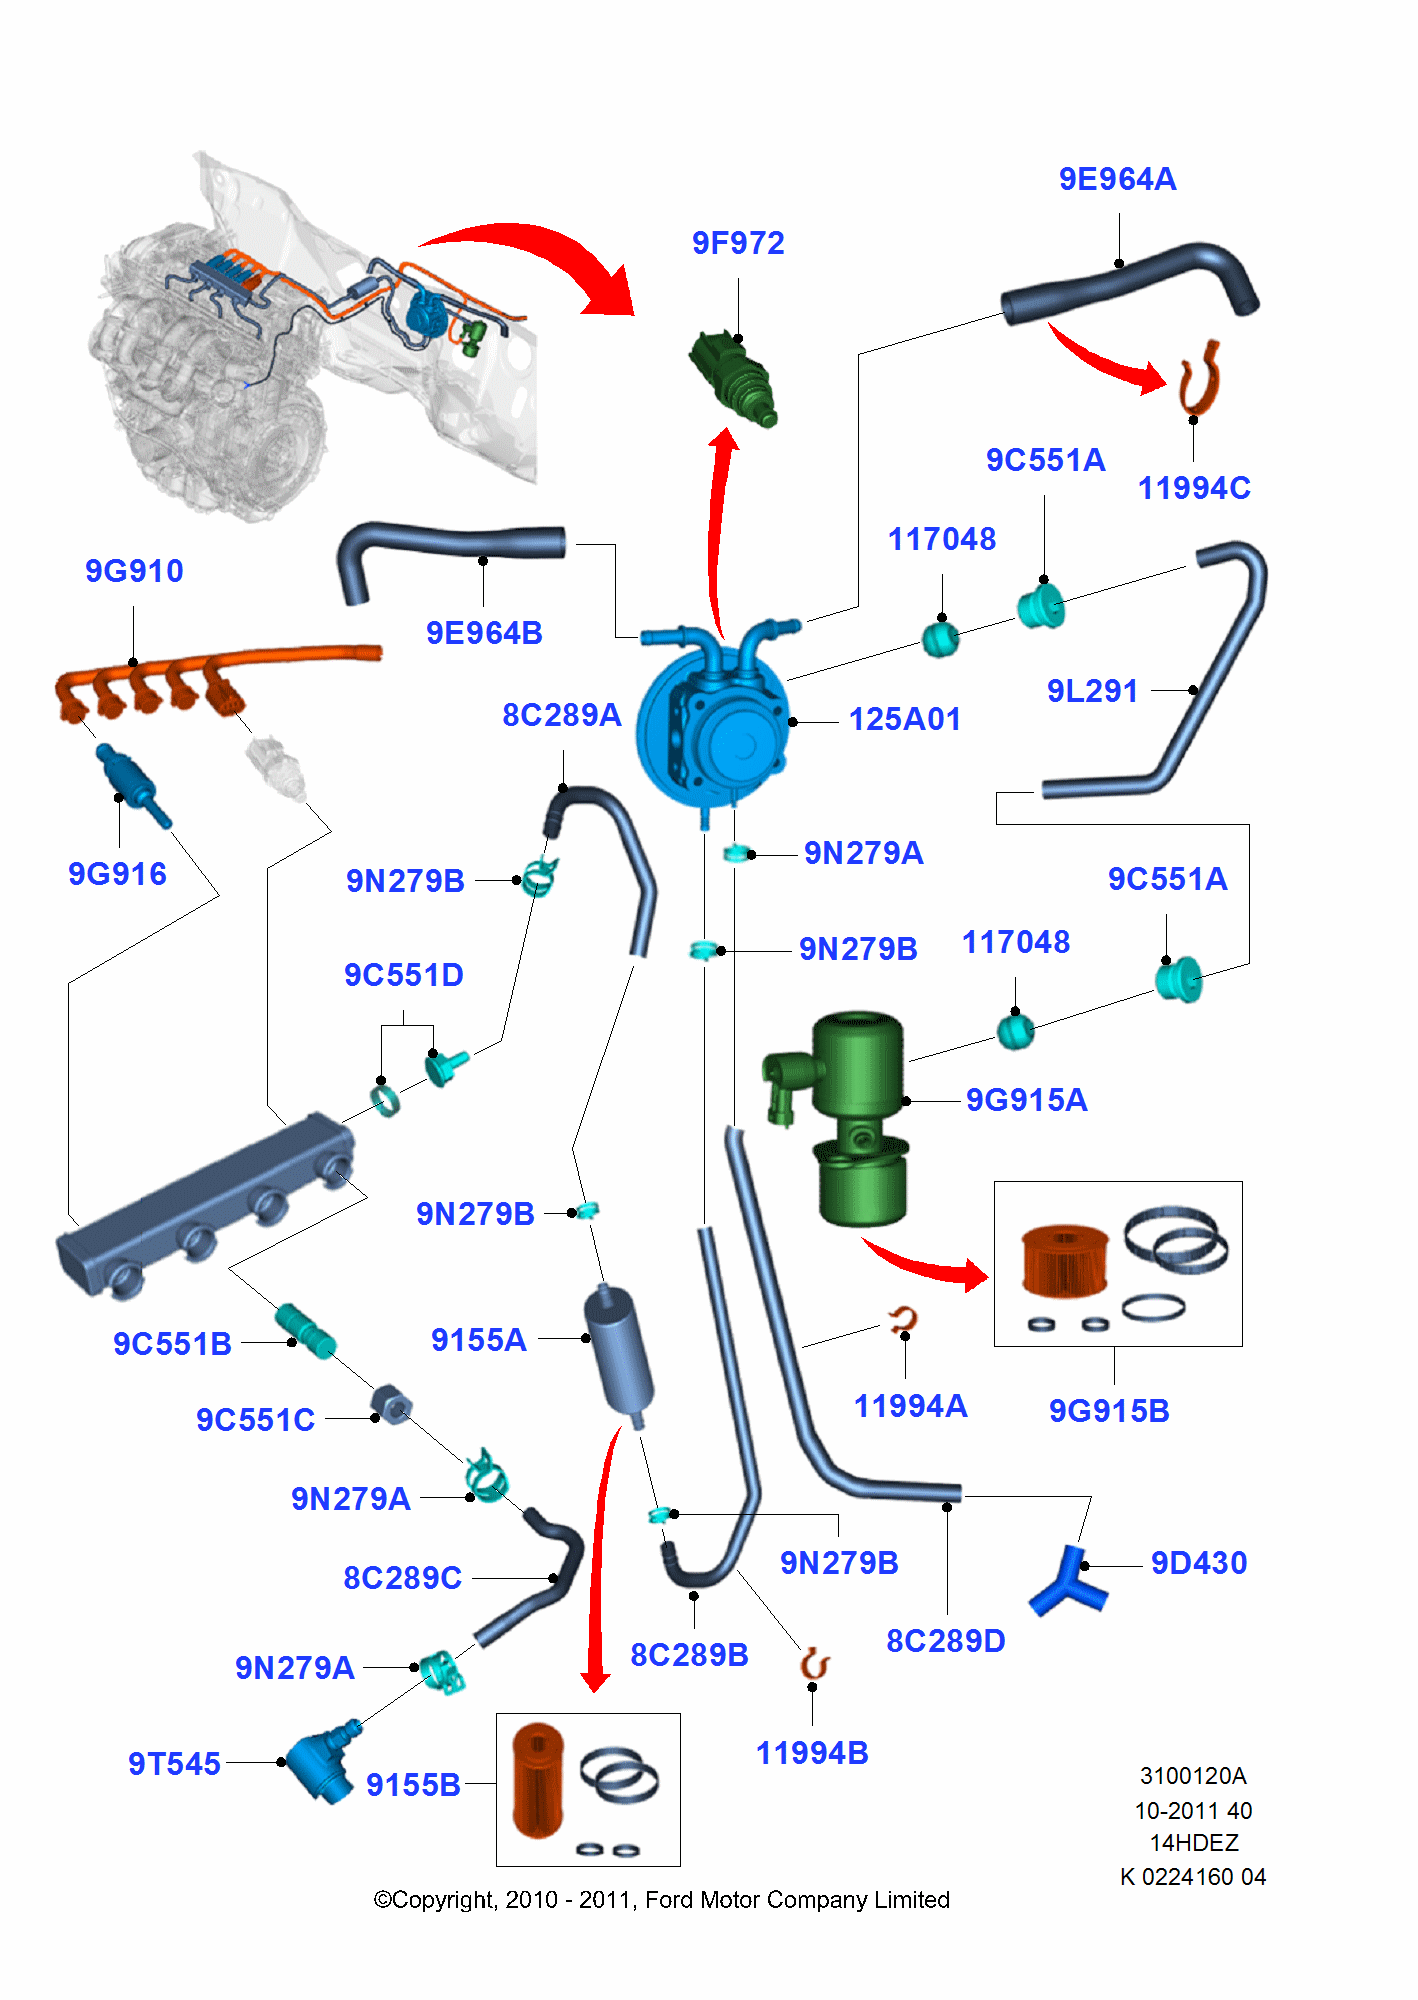 Alternative Fuel System för Ford Fiesta Fiesta 2008-2012        (CB1)